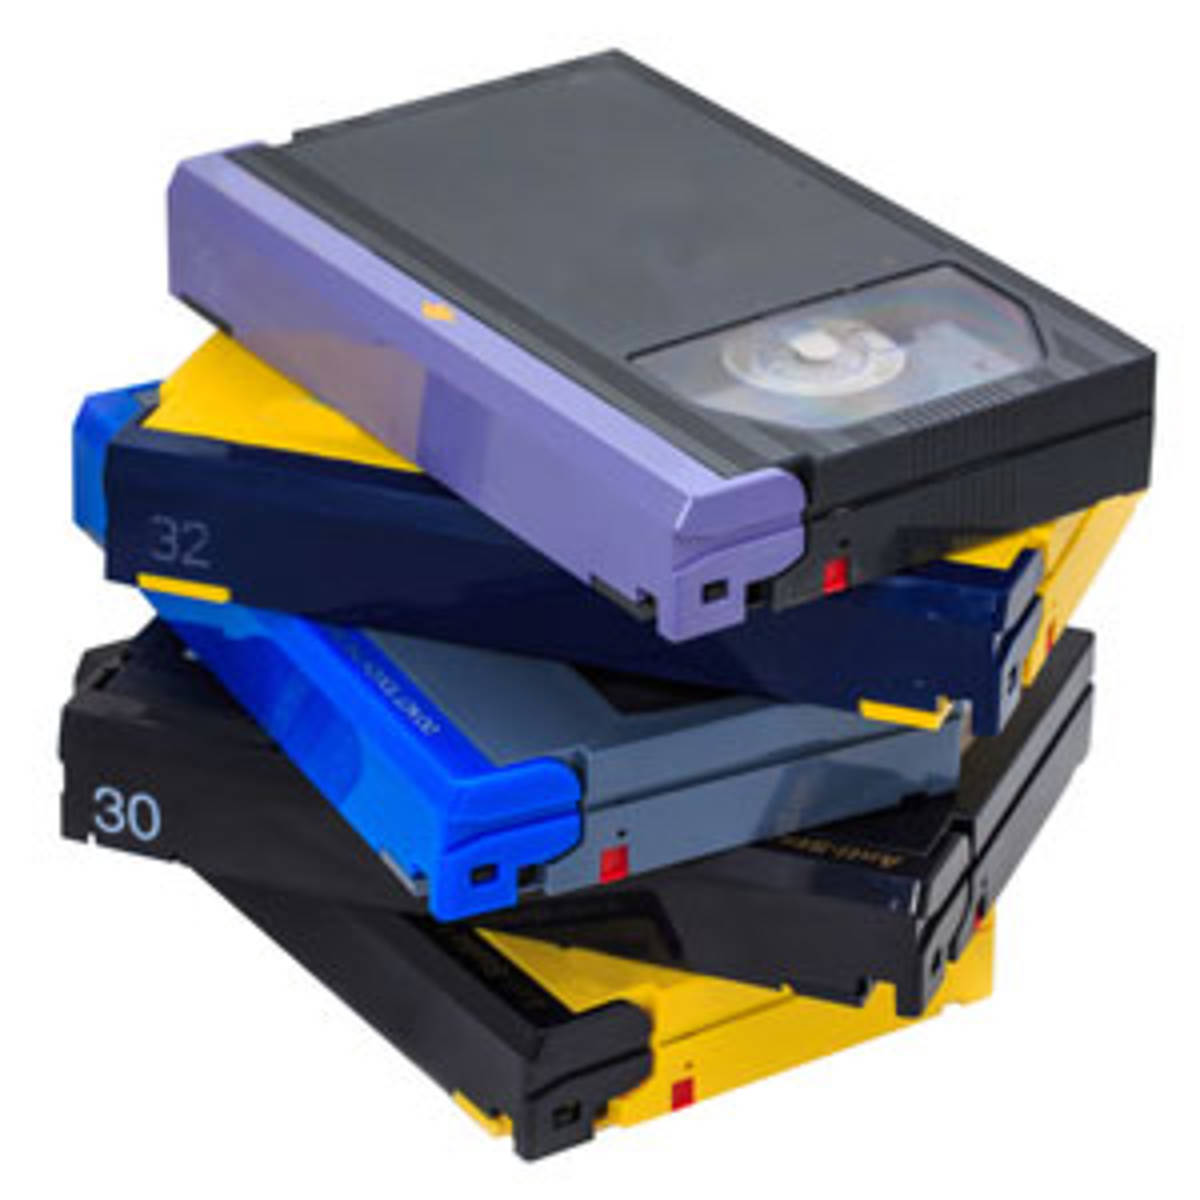 Digitaliseren van Betamax videocassettes